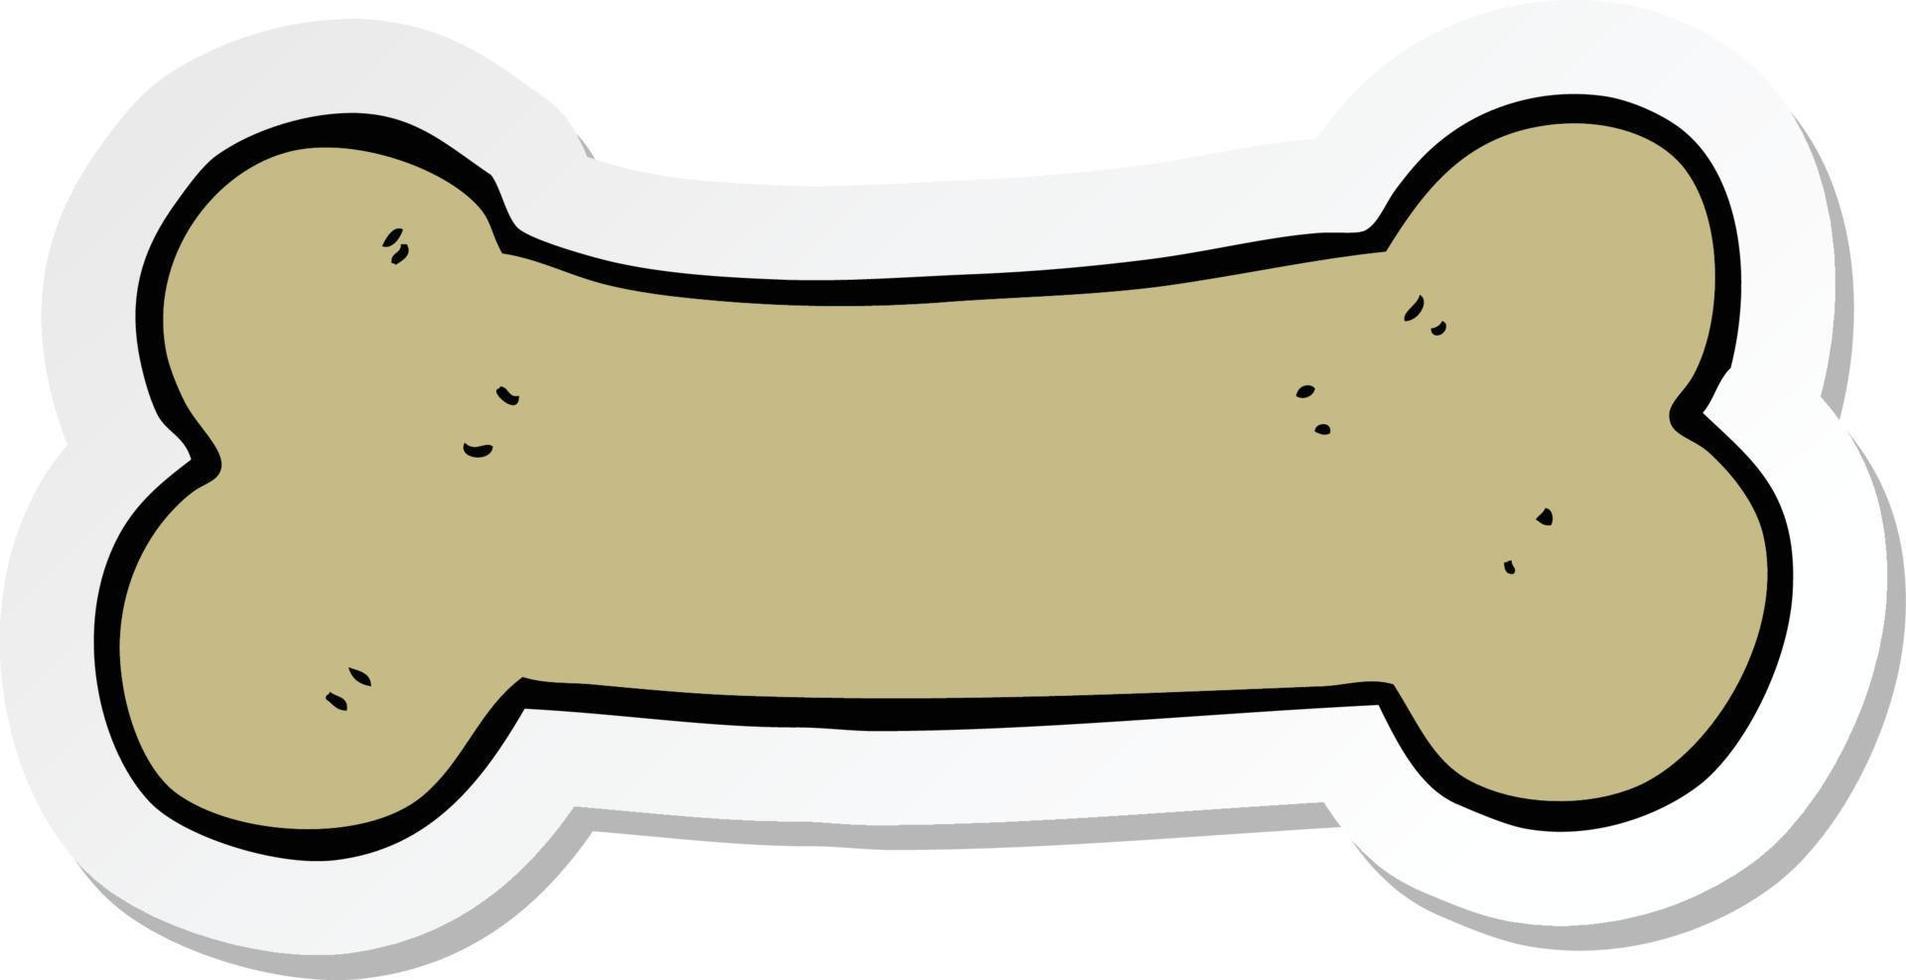 klistermärke av en tecknad hund kex vektor